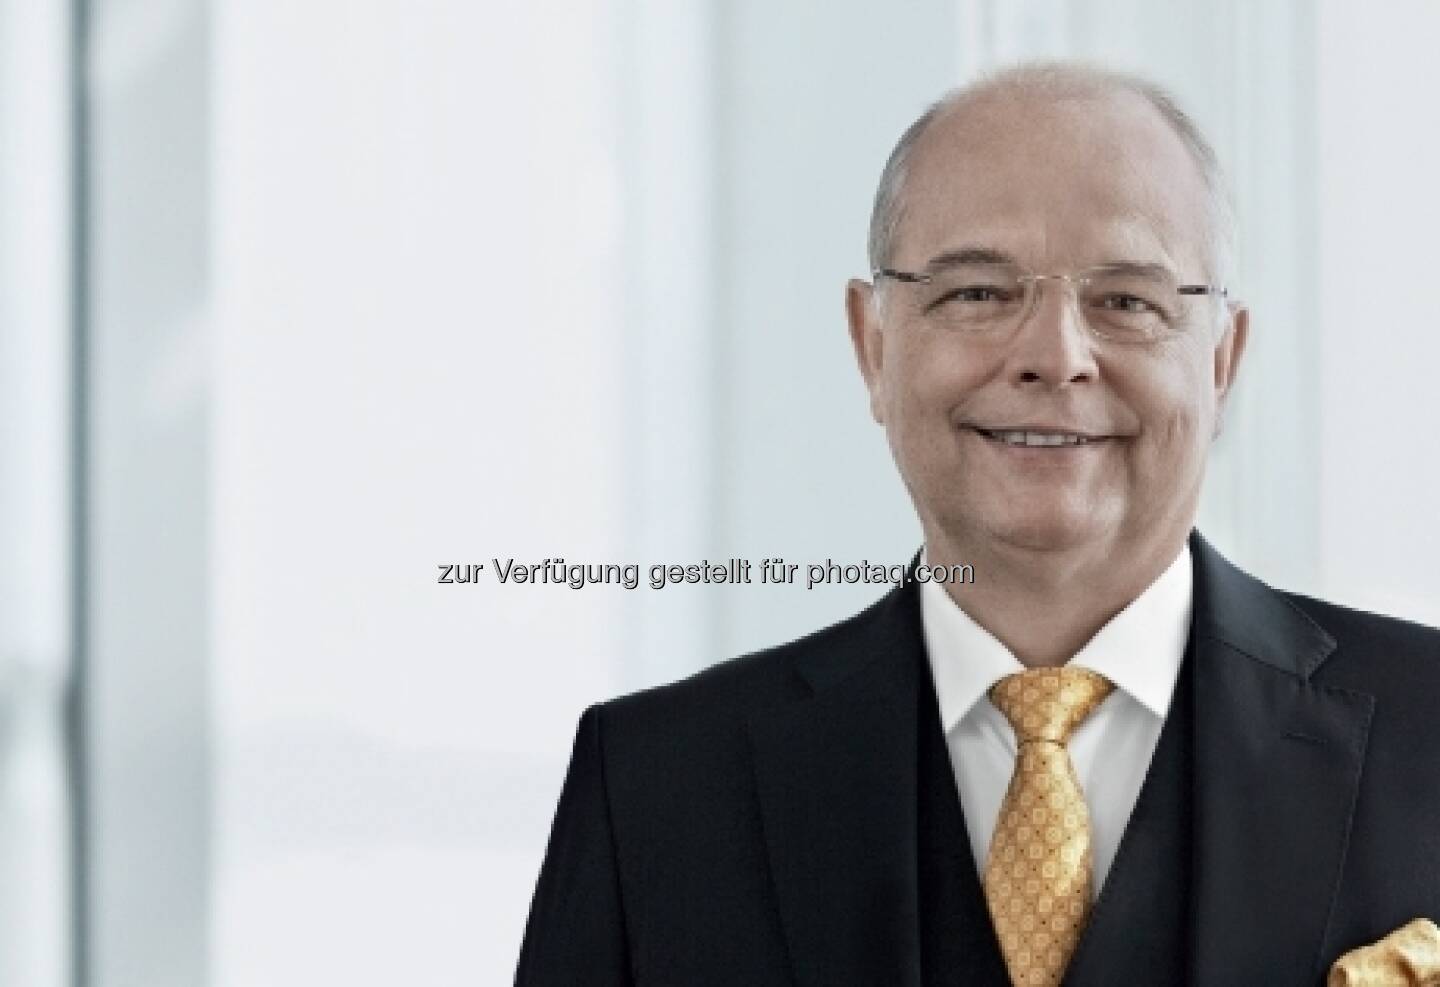 Für 5 Jahre wiederbestellt: Franz Rotter - Mitglied des Vorstandes der voestalpine AG / Leitung der Special Steel Division / Vorsitzender des Vorstandes der voestalpine Edelstahl GmbH